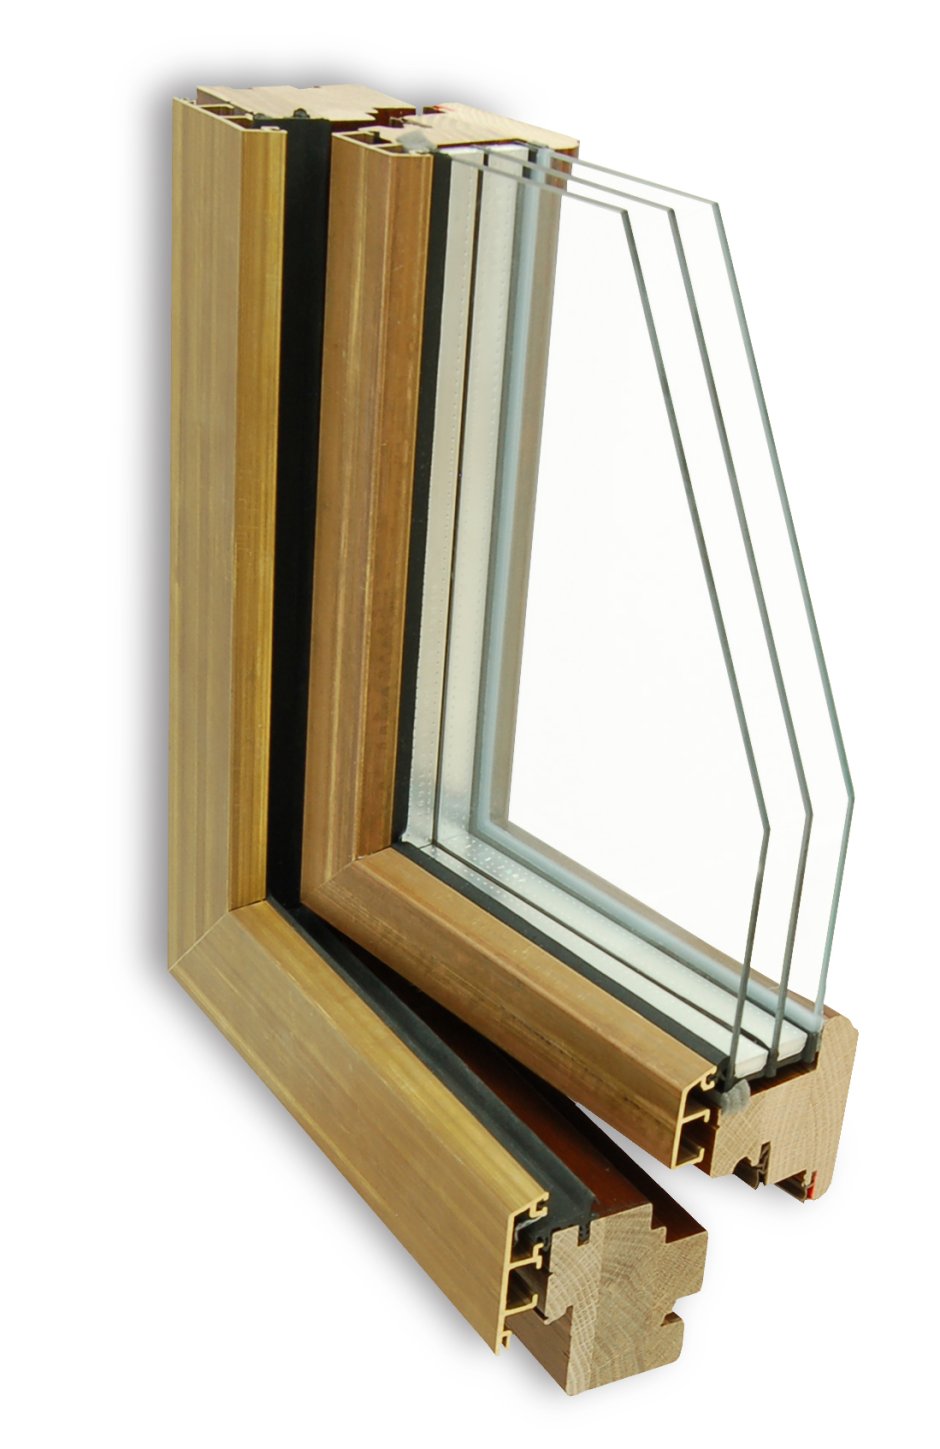 Алюминиево деревянные окна WINFIN